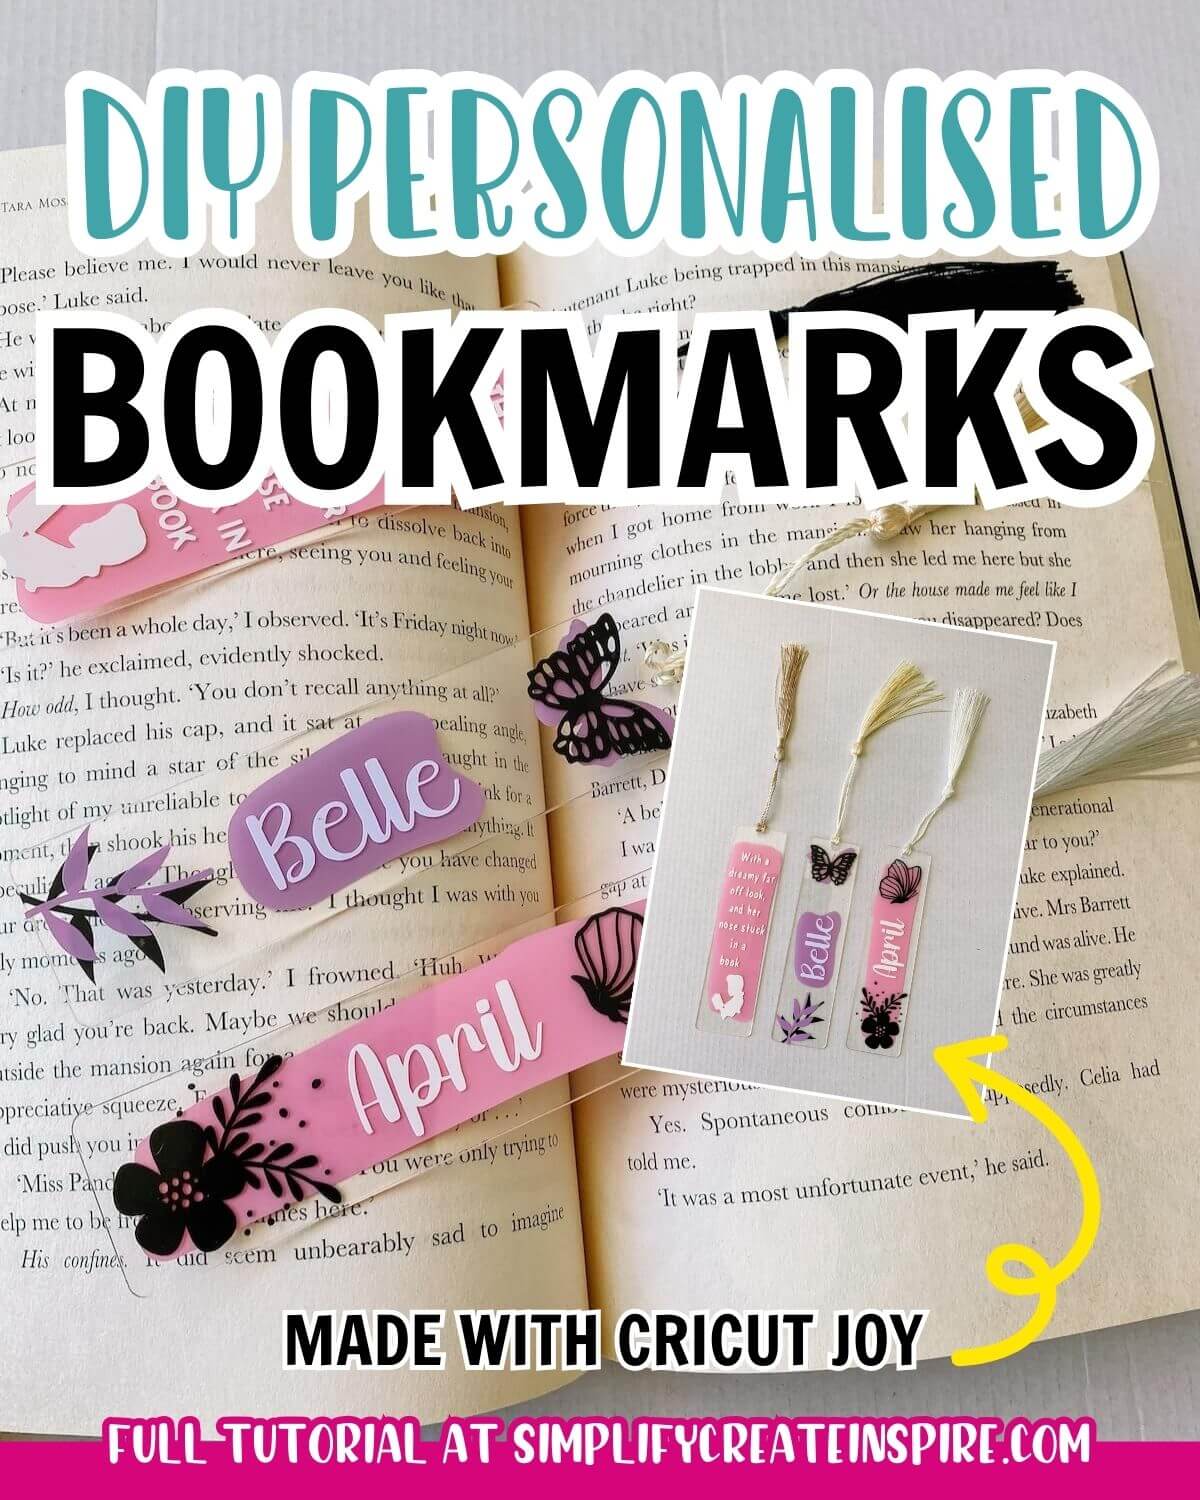 Diy personalised acrylic bookmarks with cricut joy.